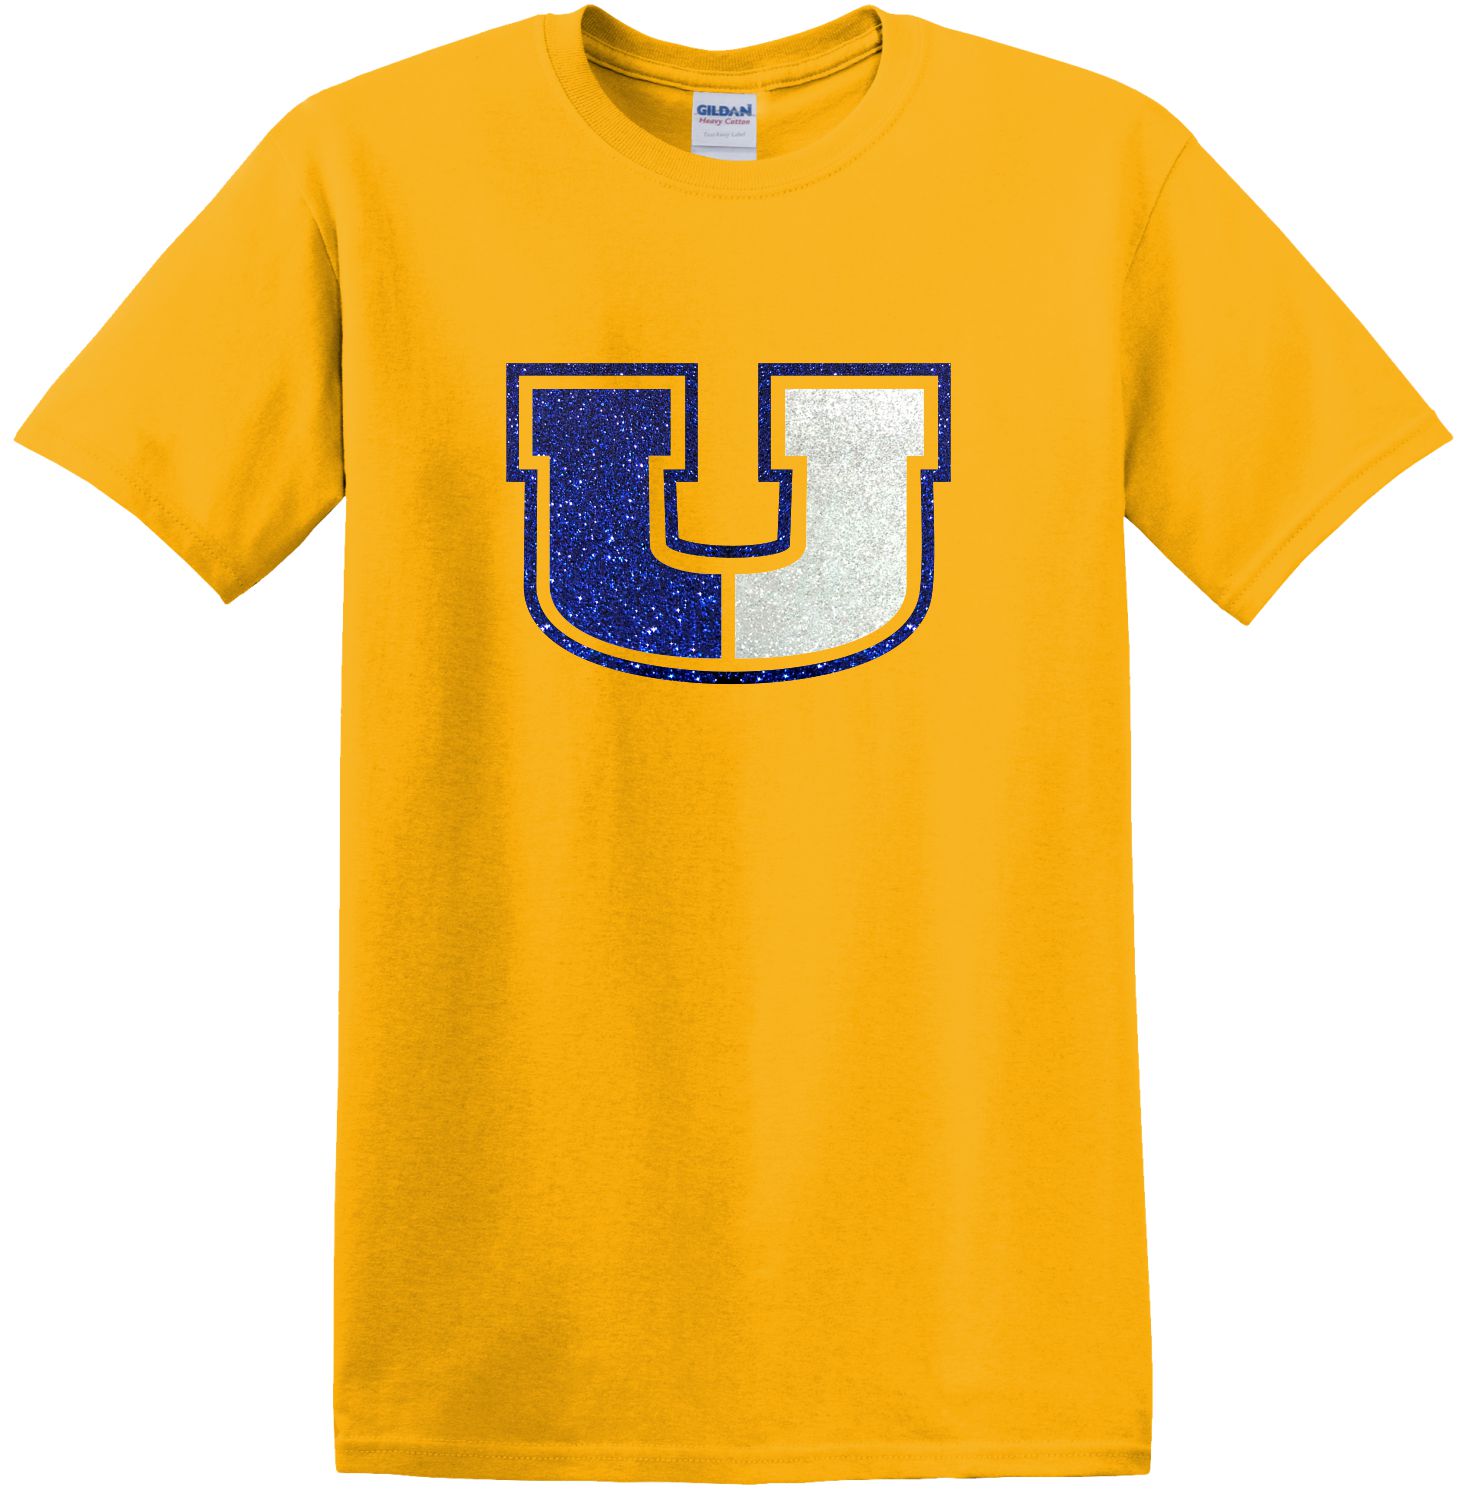 Union Sparkle T-Shirt